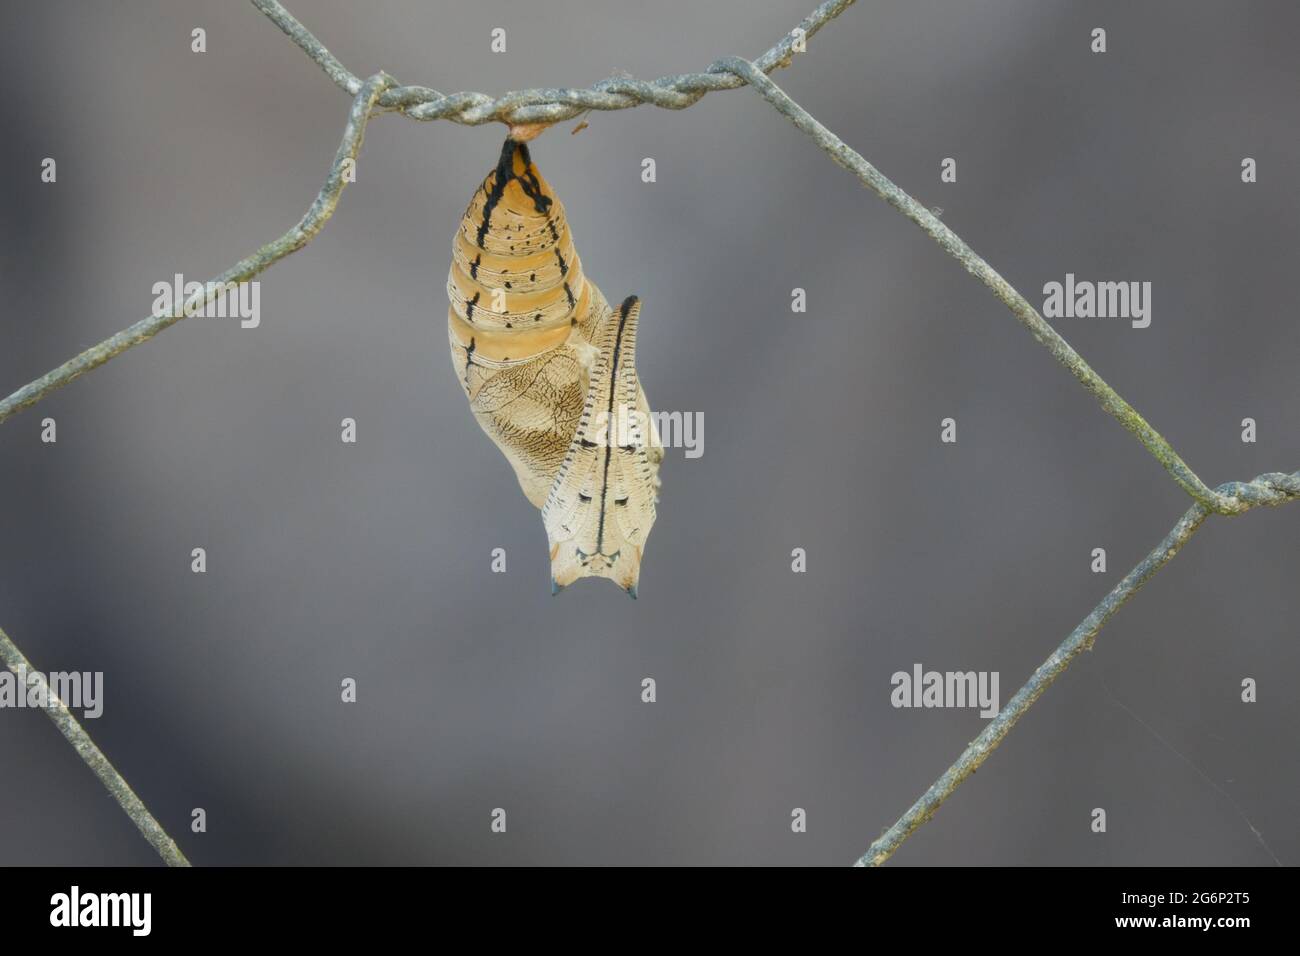 El Caso Crisálico Vacío de la Mariposa de Leafwing Australiana (Boleschallia bisaltide) después de que la mariposa ha emergido. Fotografiado en Cow Bay, Daintree, Far Nor Foto de stock